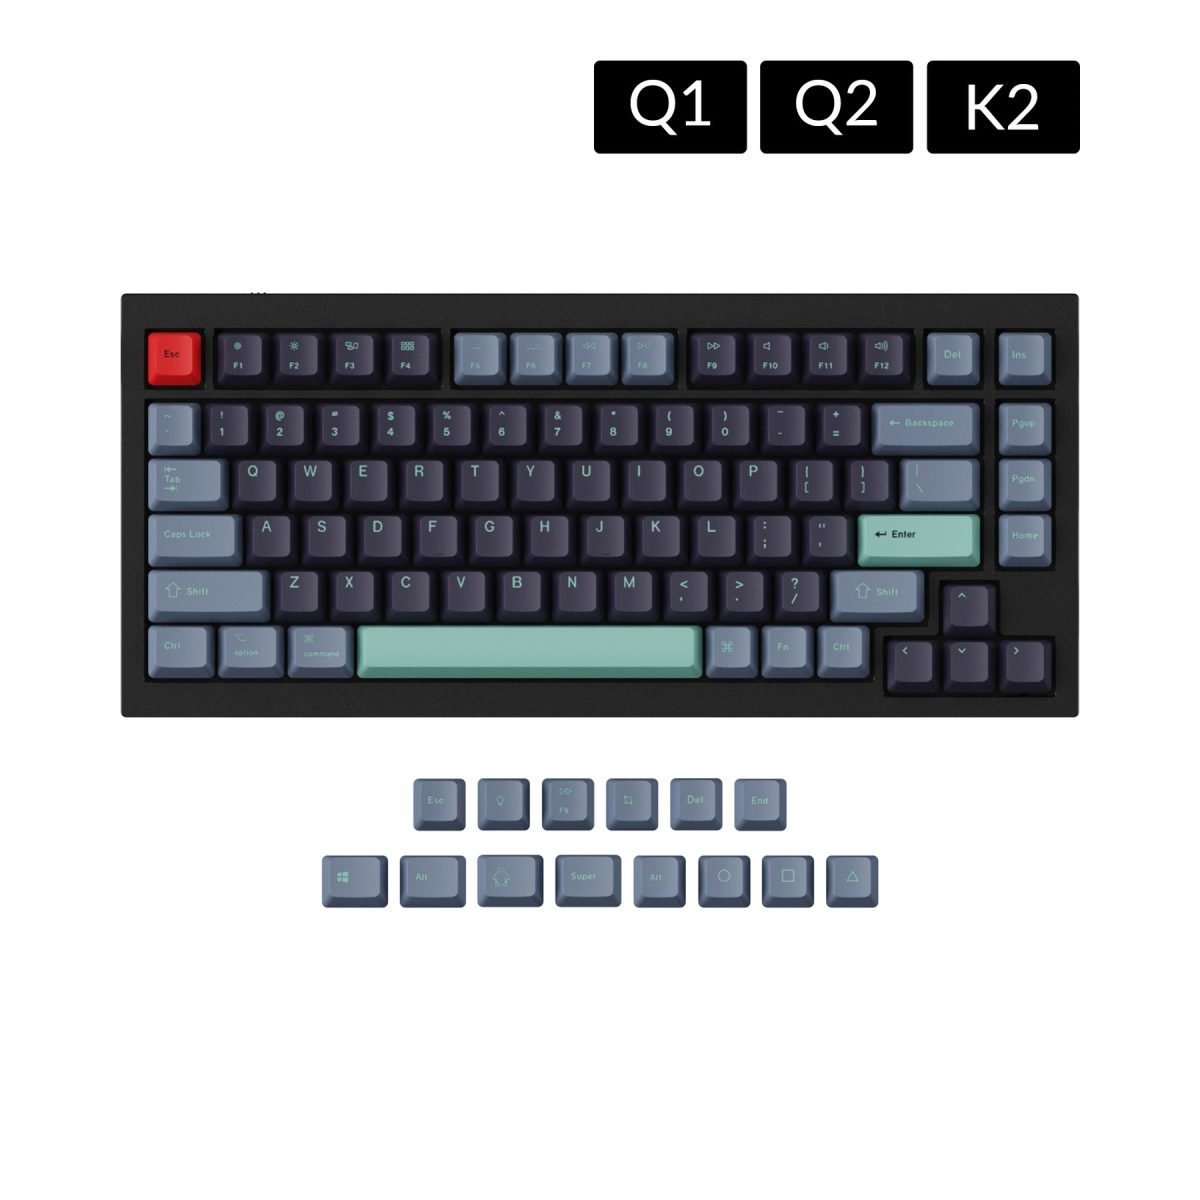 oem dye sub pbt keycap set for q1 q2 k2 keyboard